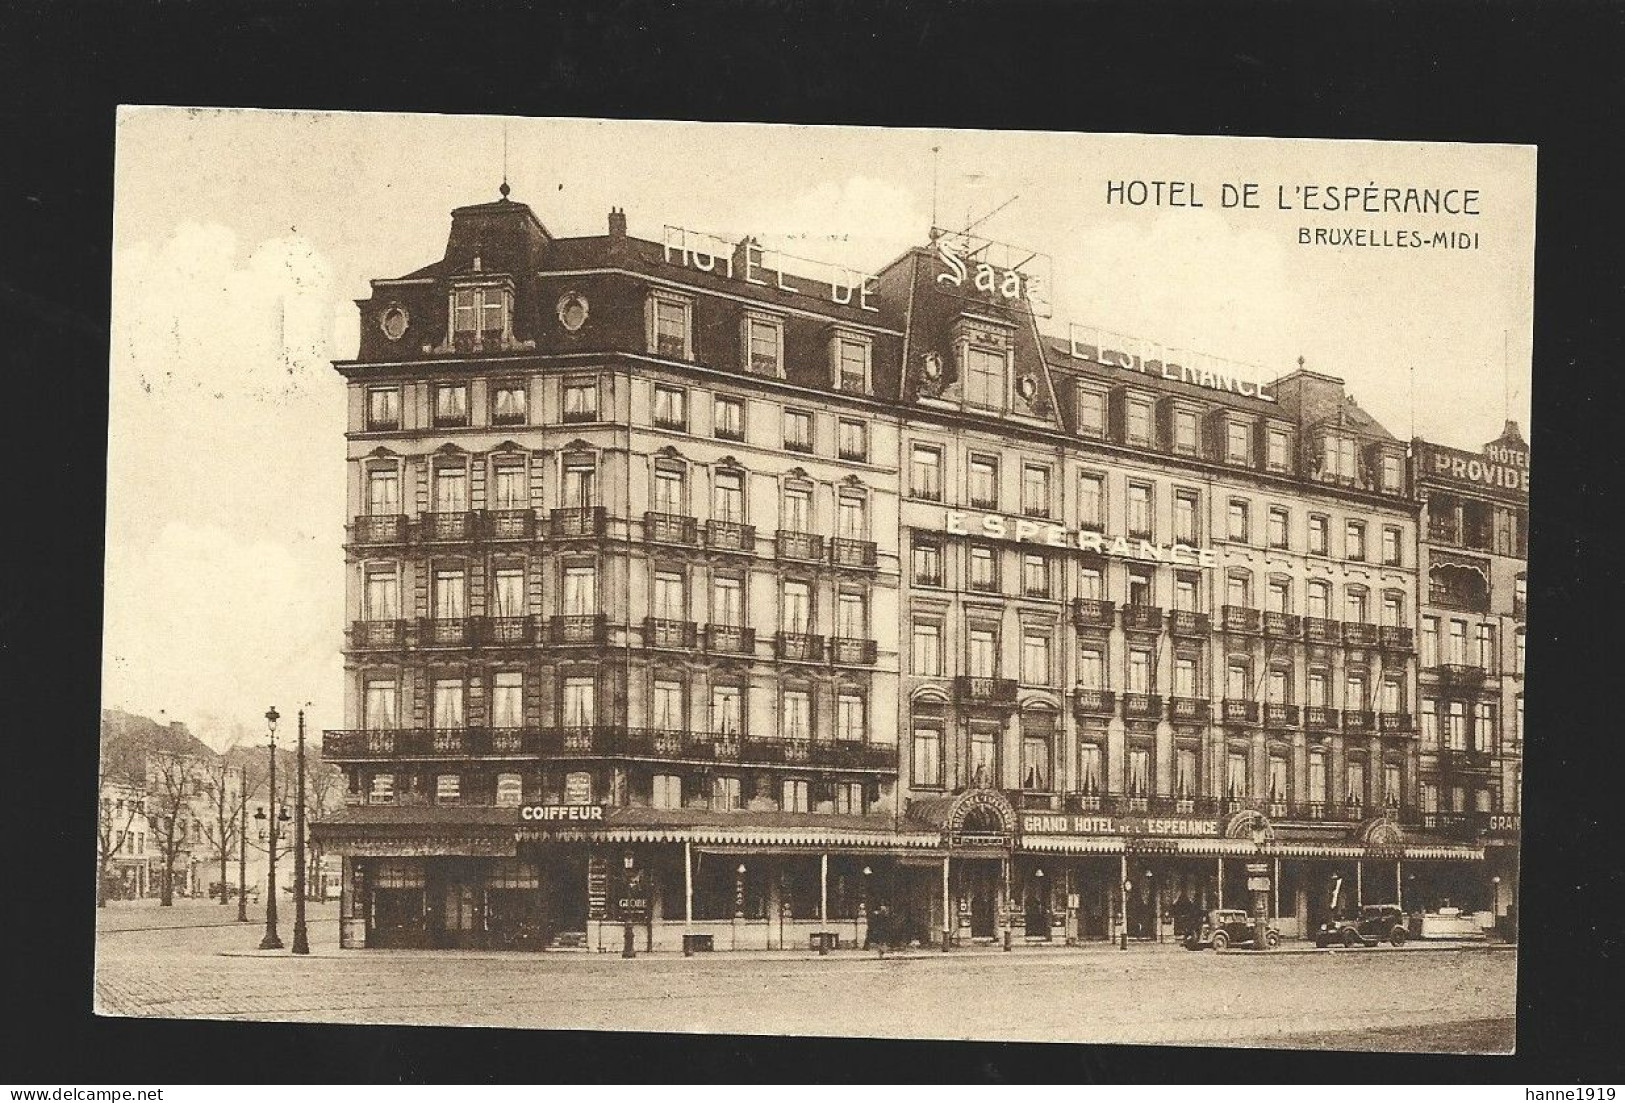 Bruxelles Midi Hotel De L' Esperance Briefstempel 1937 Brussel Htje - Pubs, Hotels, Restaurants